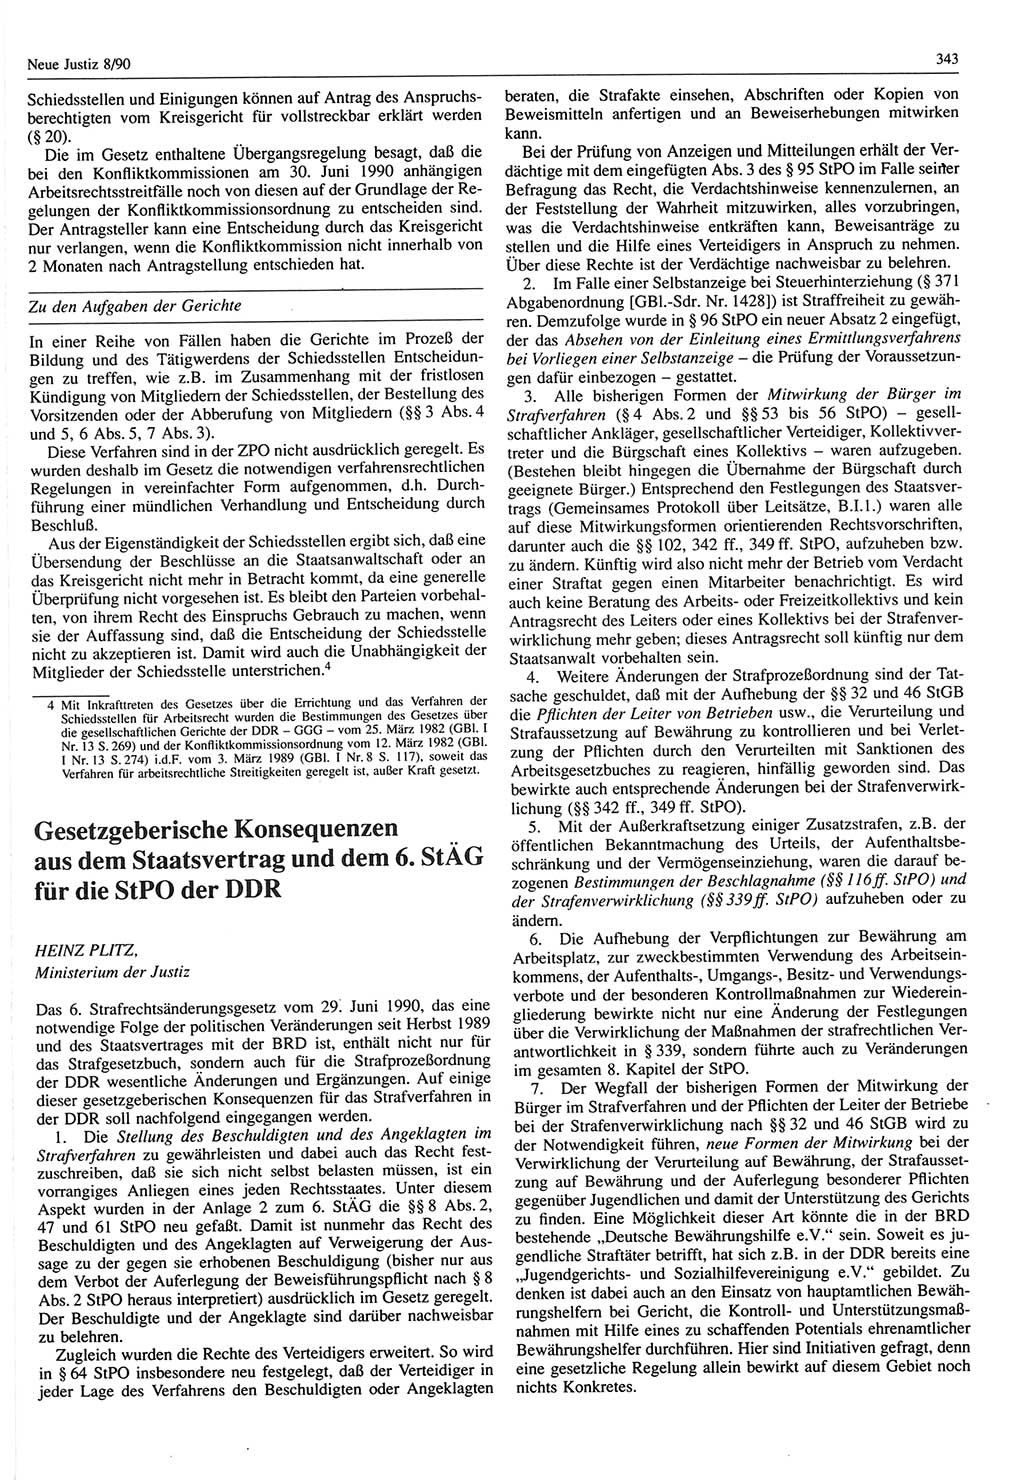 Neue Justiz (NJ), Zeitschrift für Rechtsetzung und Rechtsanwendung [Deutsche Demokratische Republik (DDR)], 44. Jahrgang 1990, Seite 343 (NJ DDR 1990, S. 343)